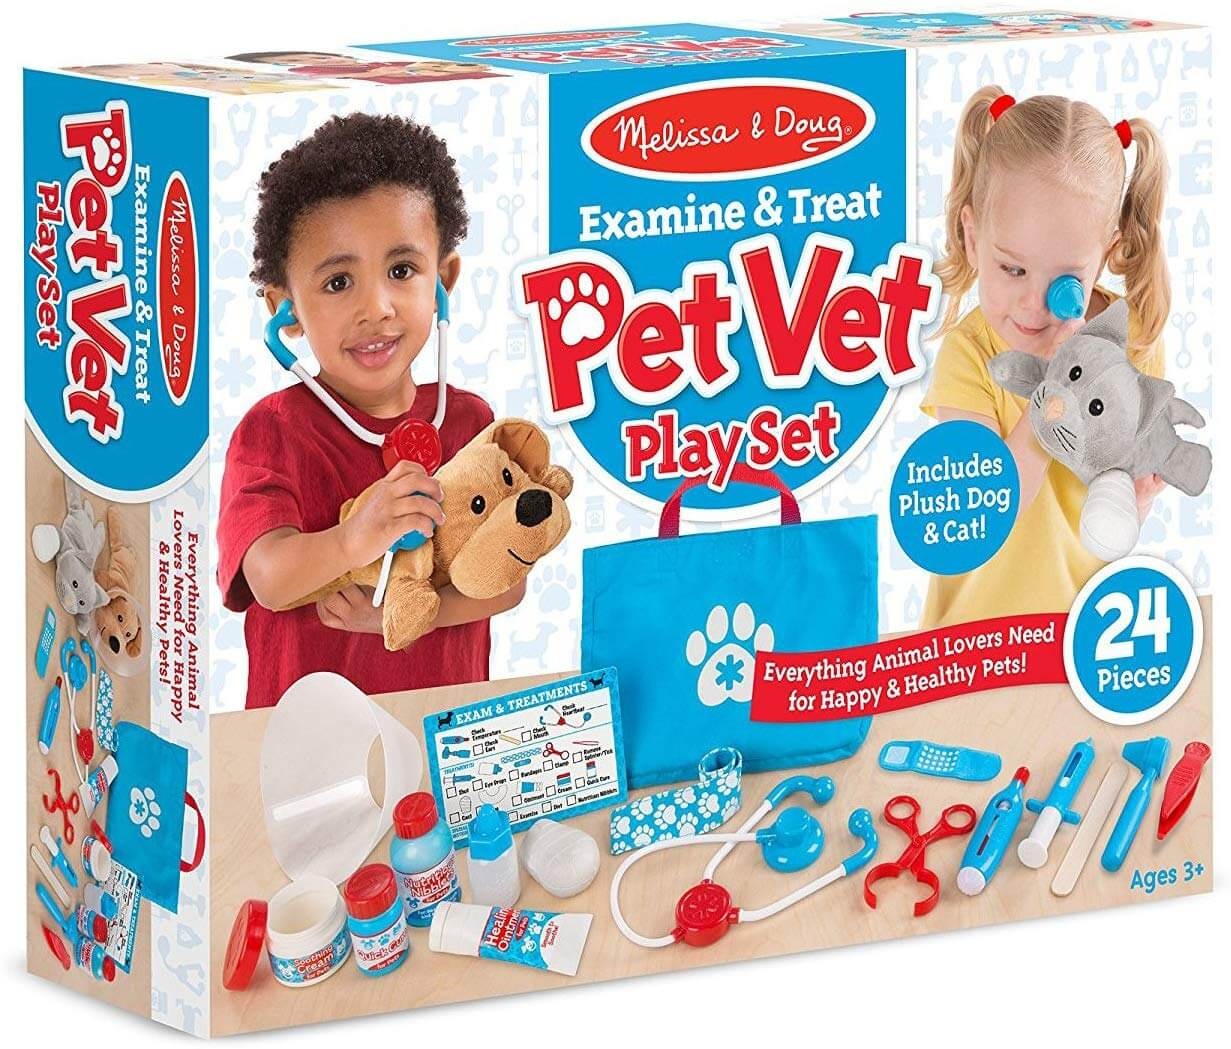 Vet Pet Play Set - Melissa & Doug - 8520